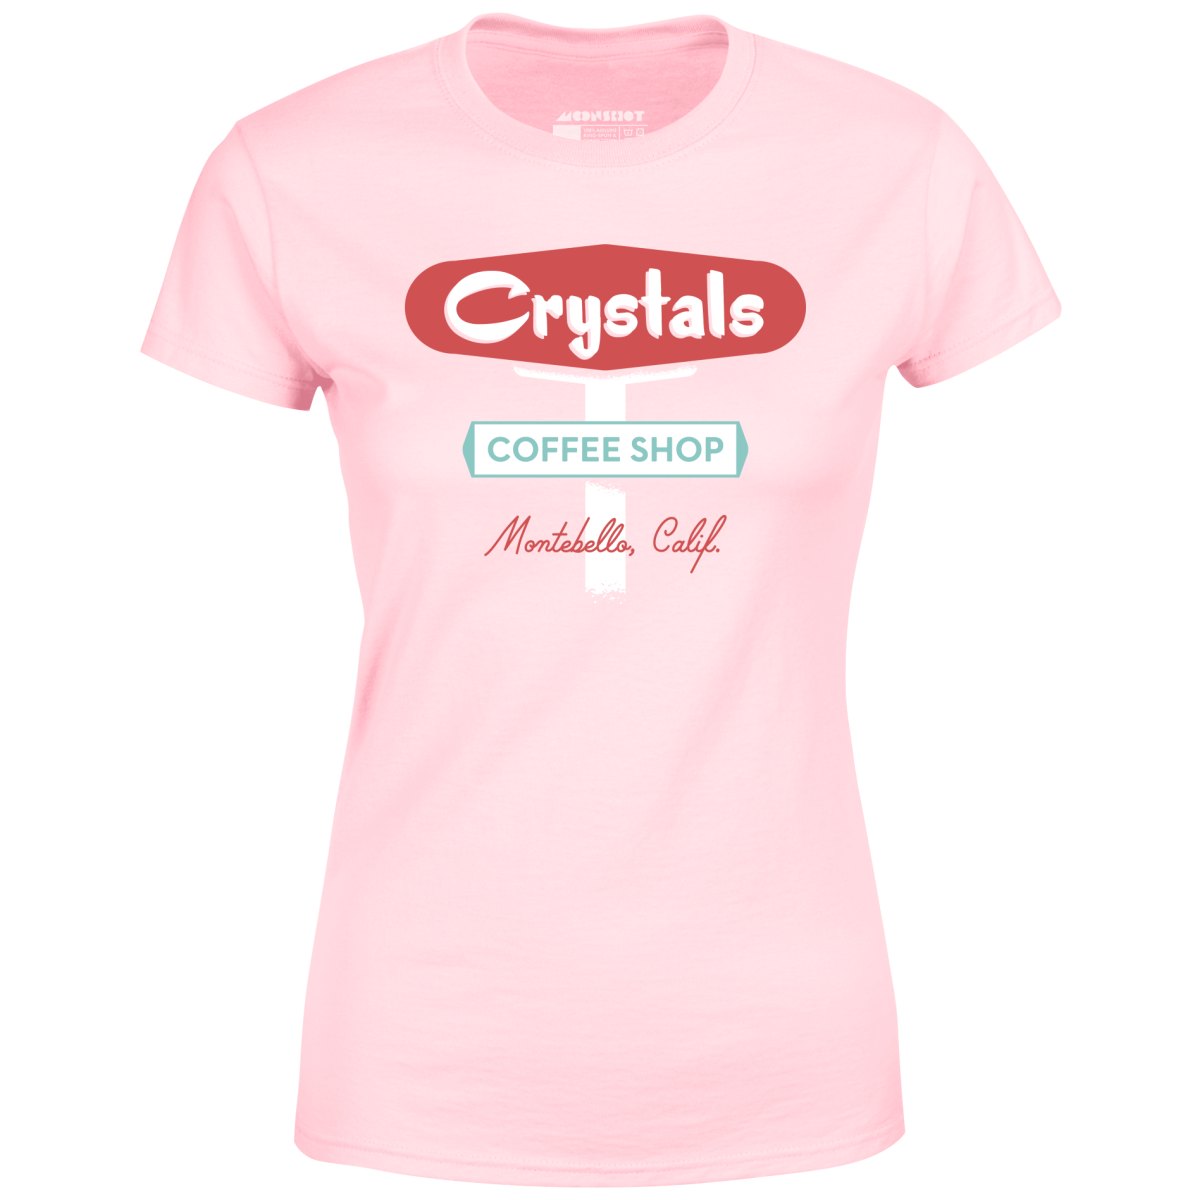 Crystals Coffee Shop - Montebello, CA - Vintage Restaurant - Women's T-Shirt